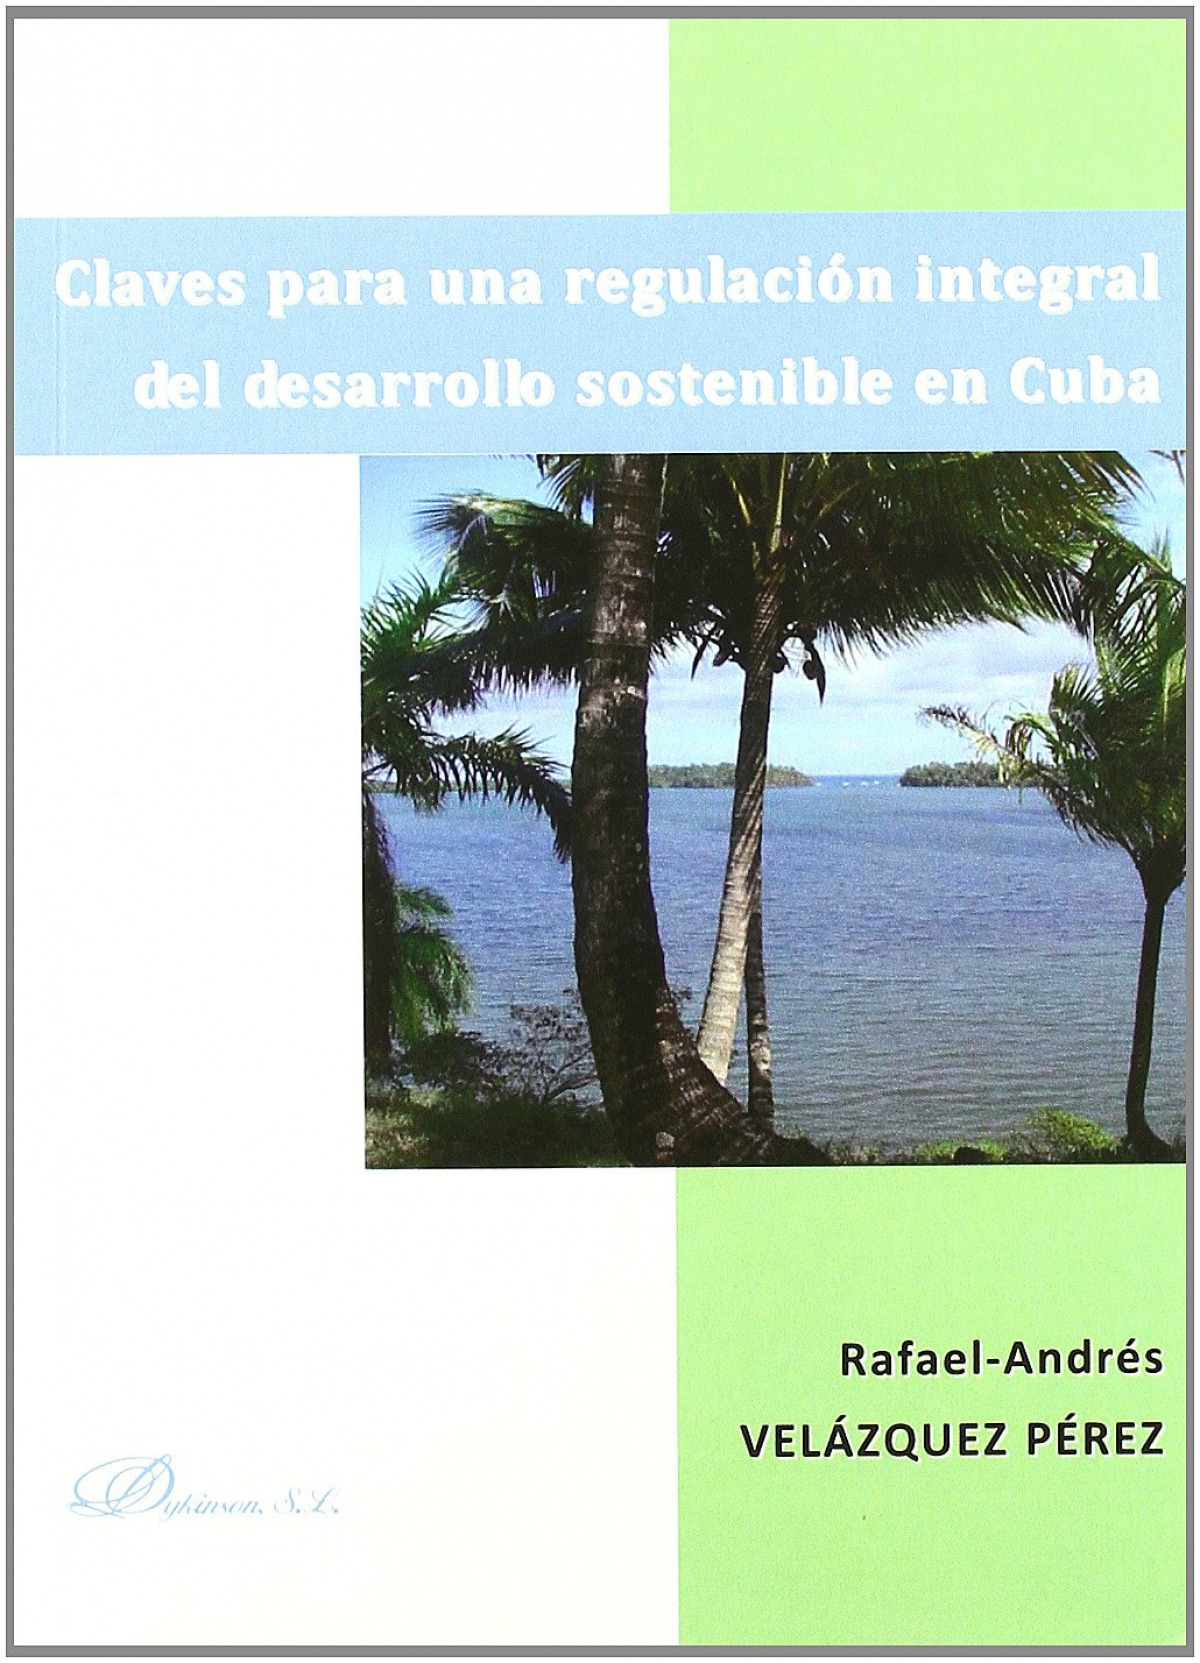 Claves para una regulación integral del desarrollo sostenible en Cuba - Velázquez Pérez, Rafael-Andrés